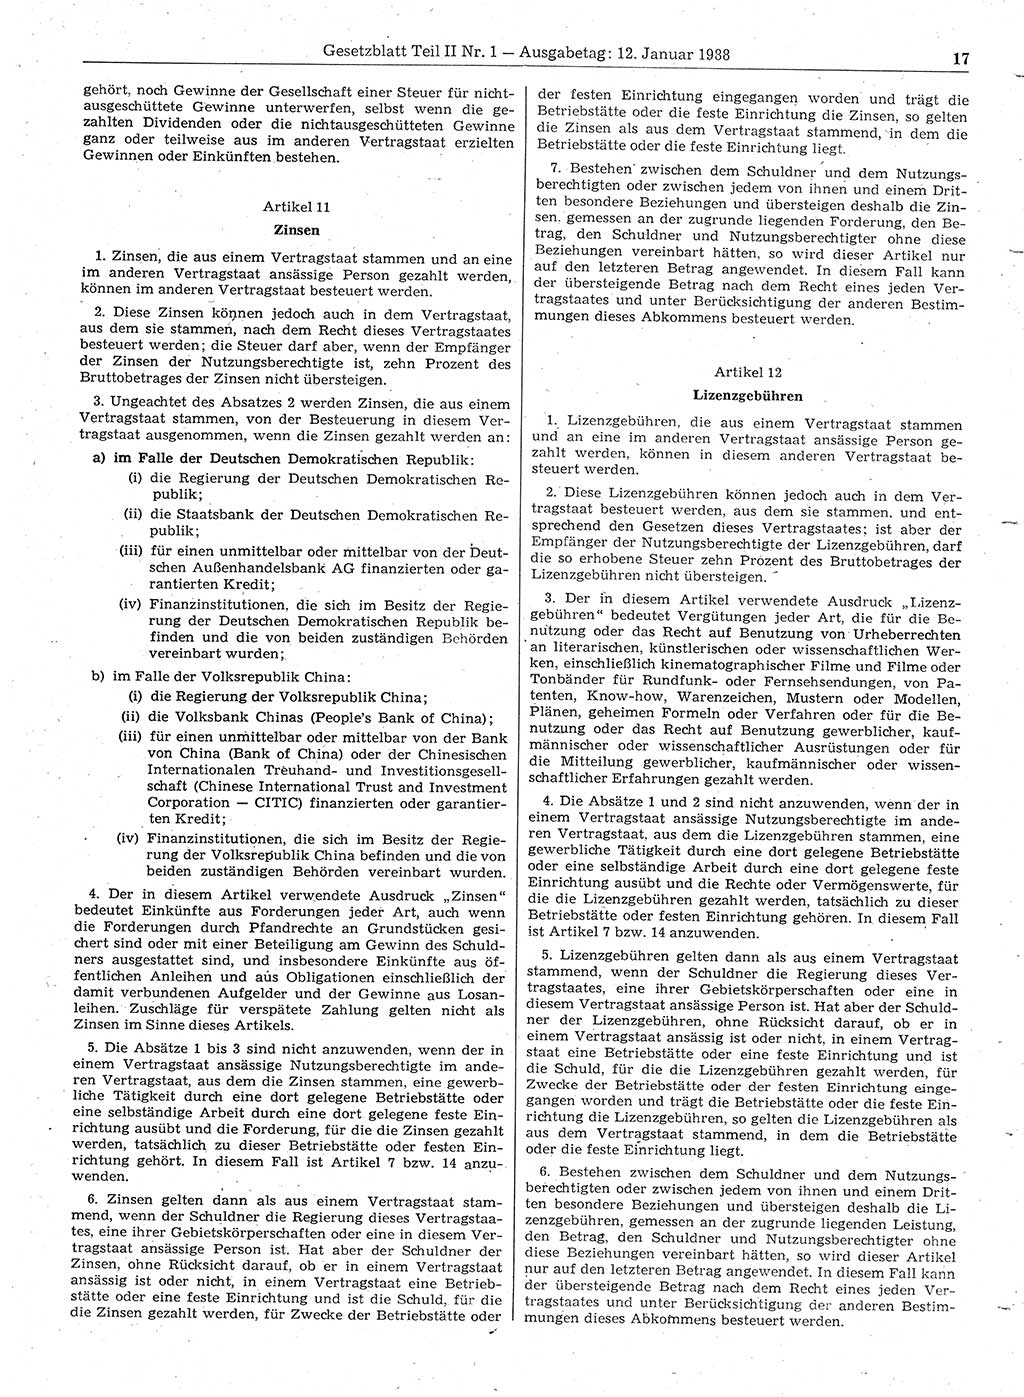 Gesetzblatt (GBl.) der Deutschen Demokratischen Republik (DDR) Teil ⅠⅠ 1988, Seite 17 (GBl. DDR ⅠⅠ 1988, S. 17)